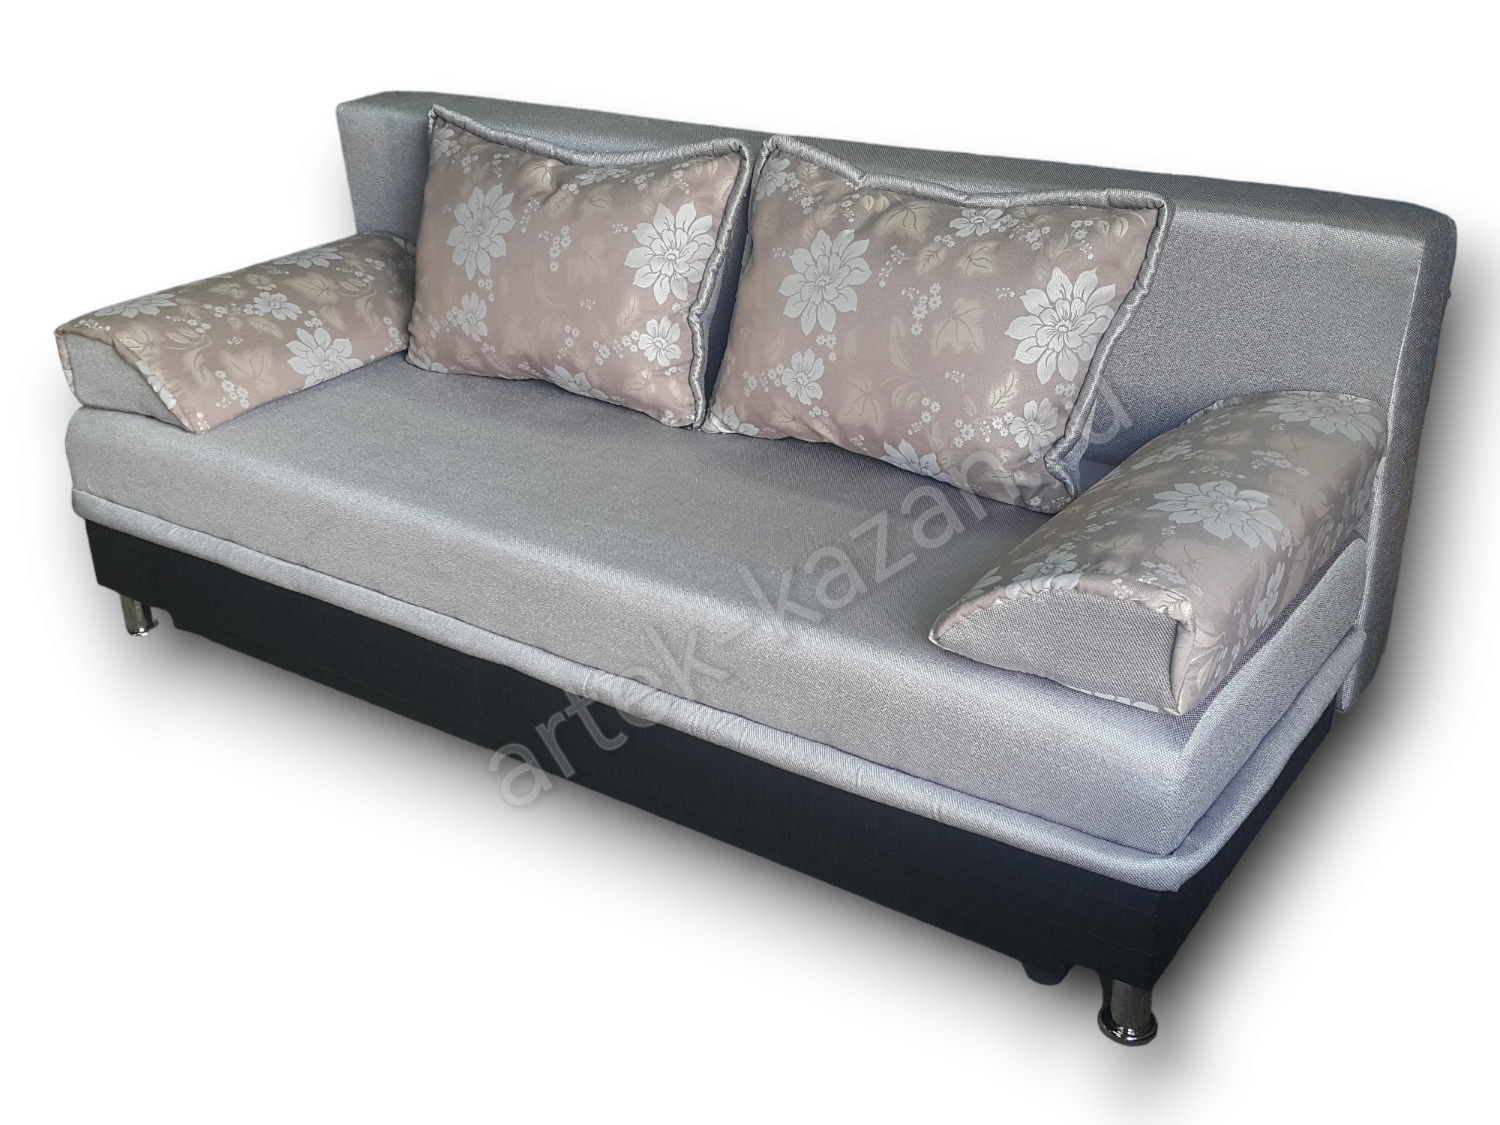 диван еврокнижка Эконом фото № 77. Купить недорогой диван по низкой цене от производителя можно у нас.